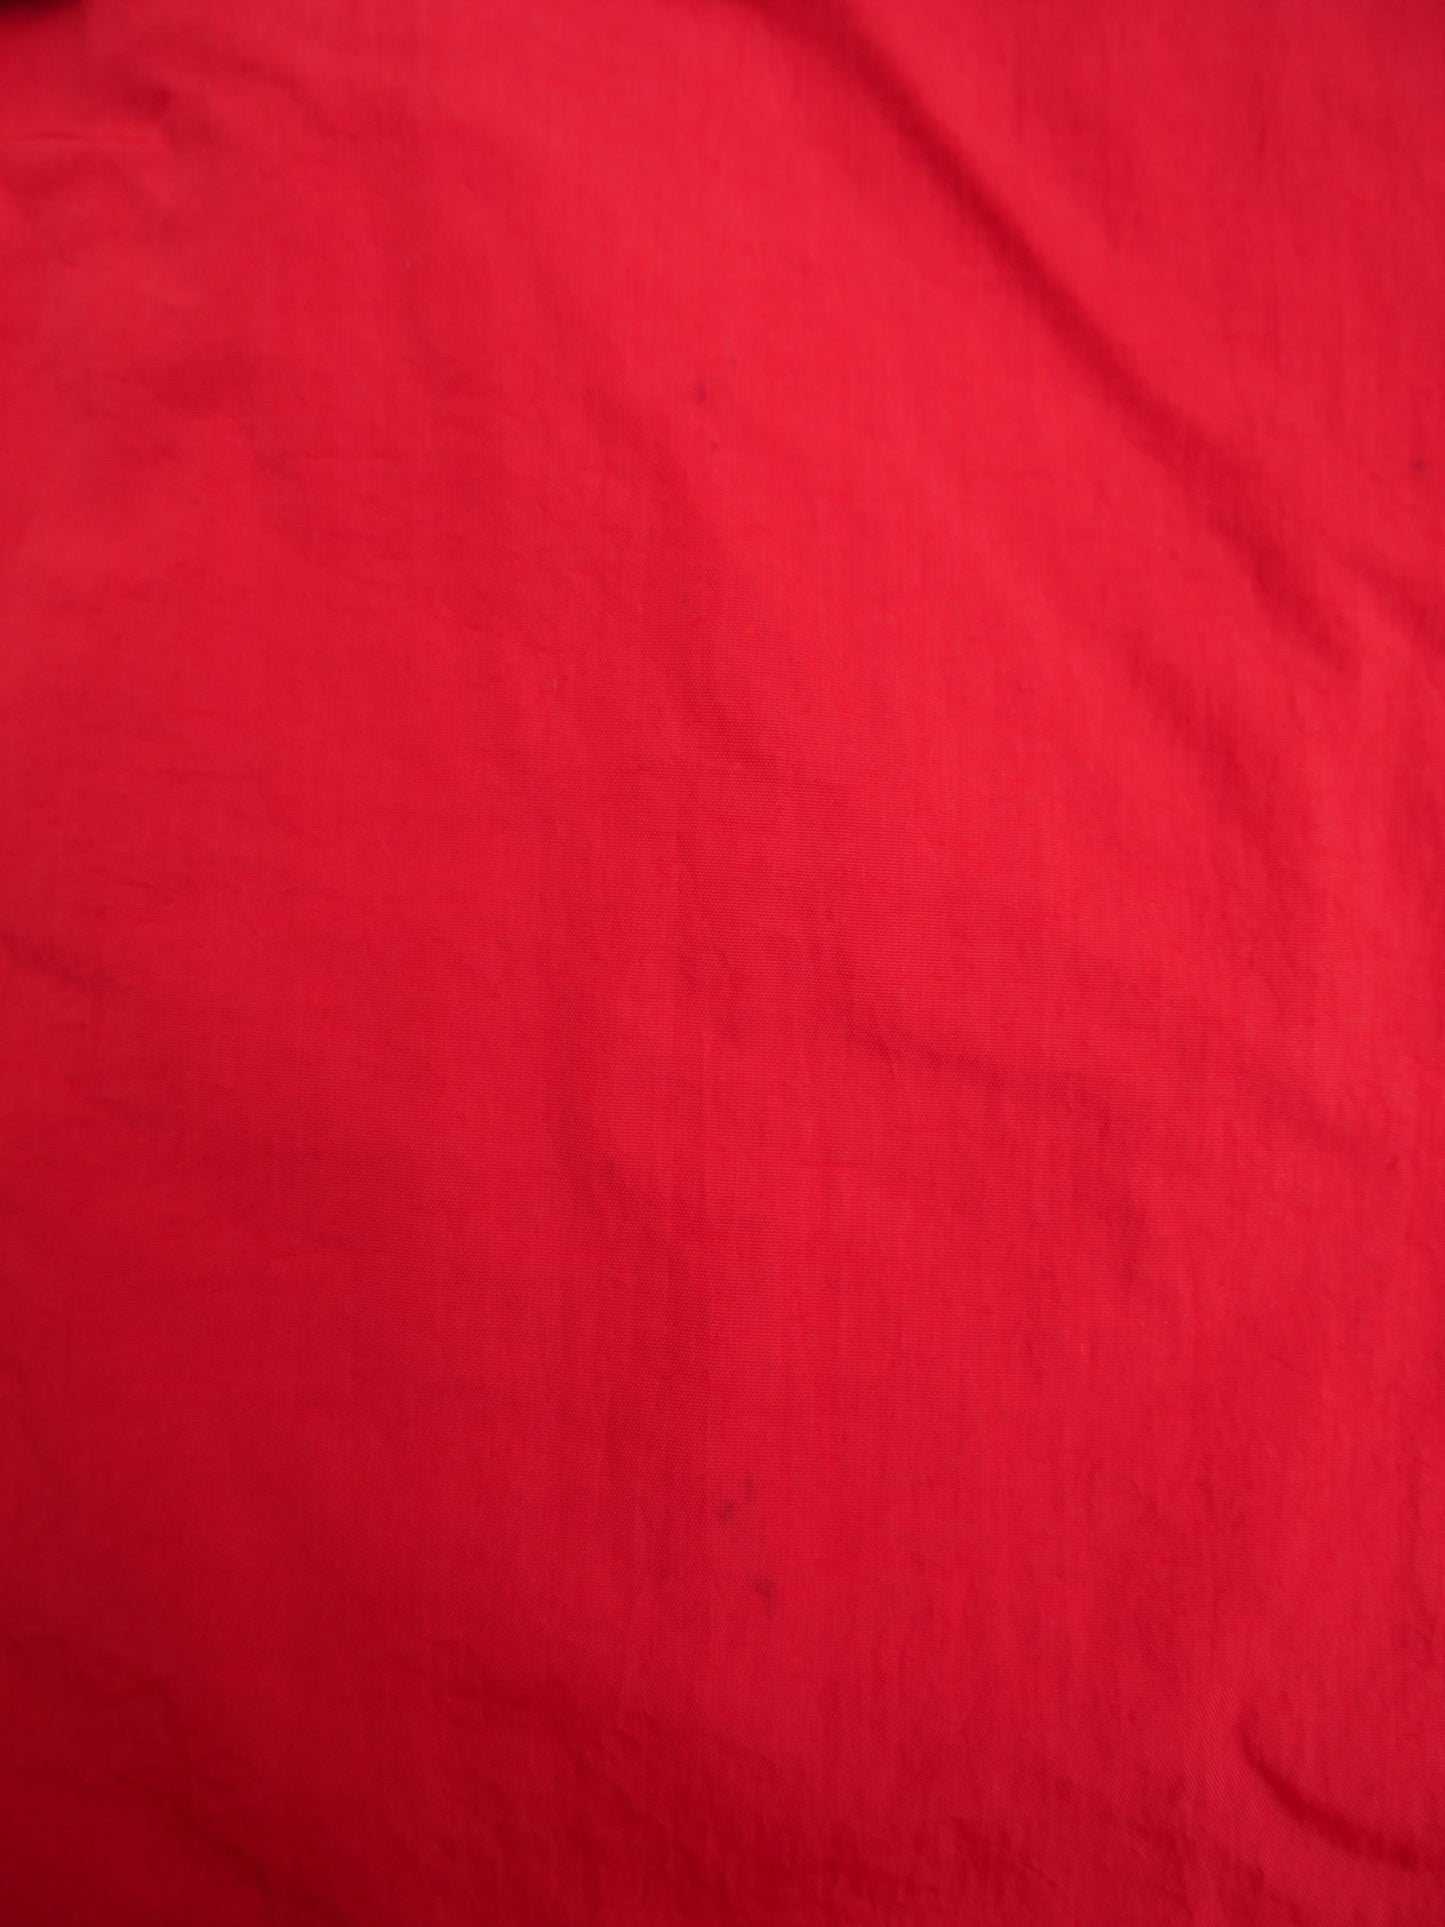 nike embroidered Logo red oversized Half Zip Windbreaker Jacke - Peeces